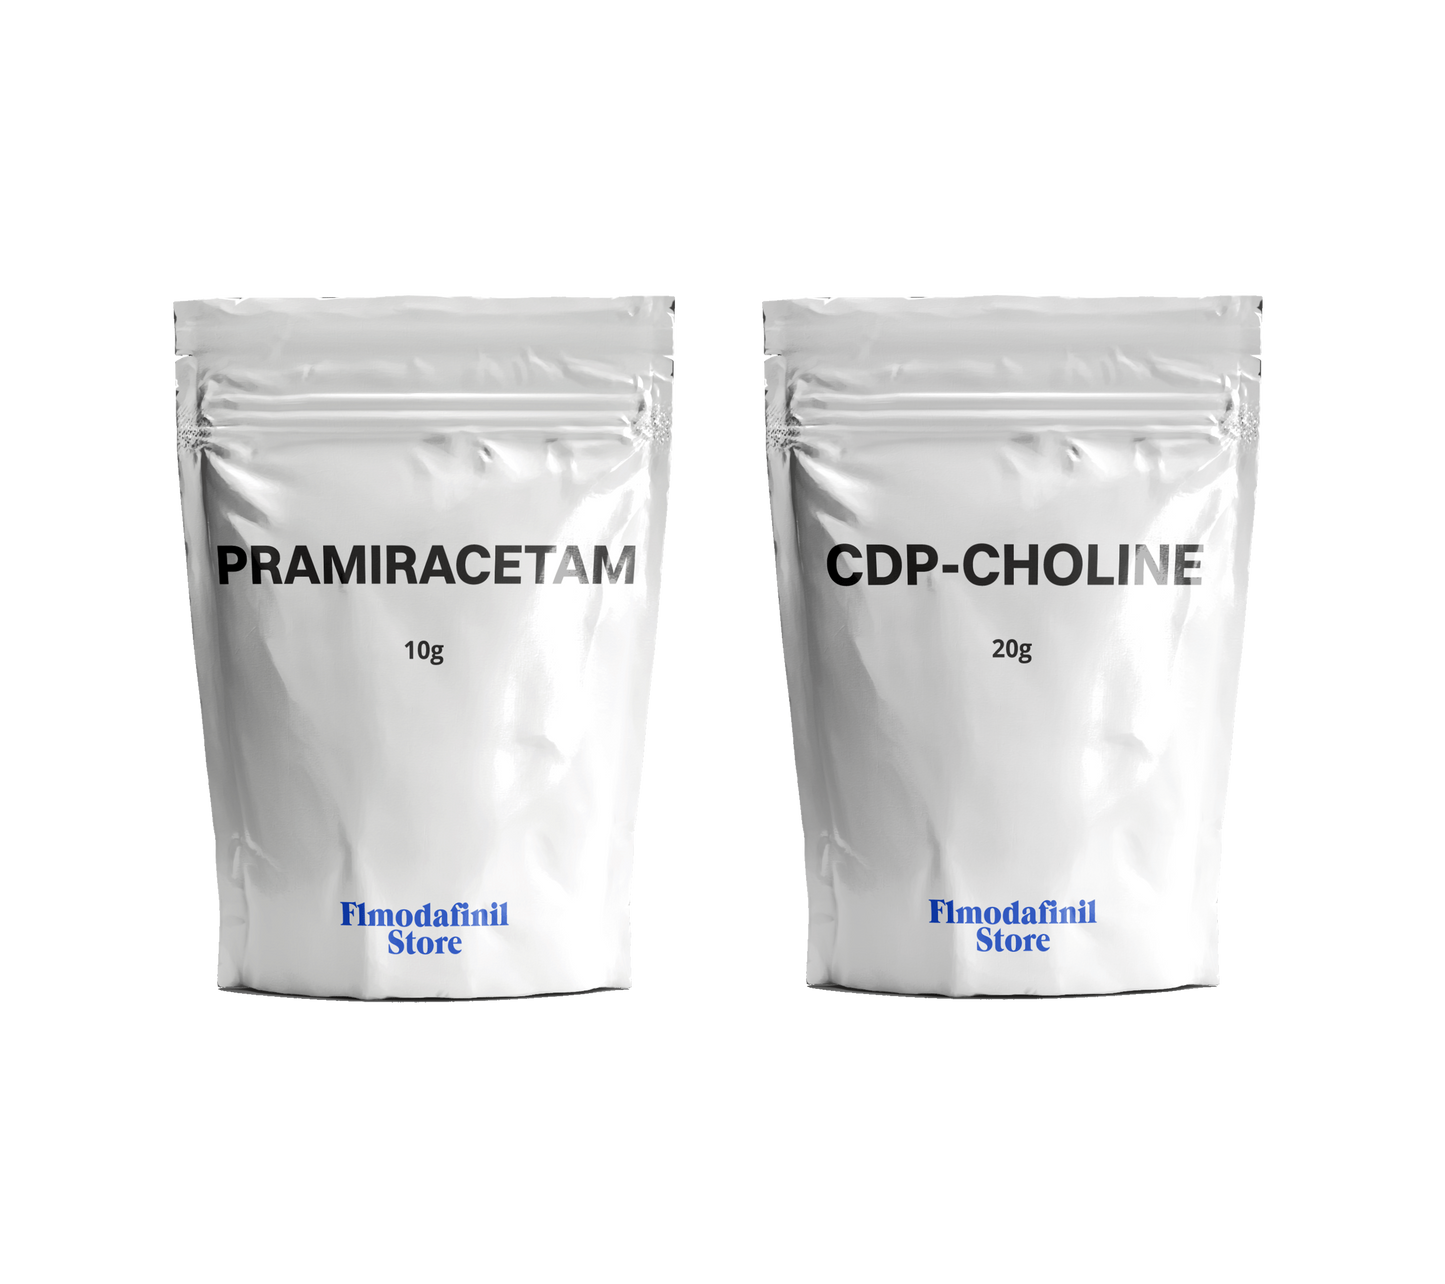 Flmodafinil & CDP-Choline Powder Bundle